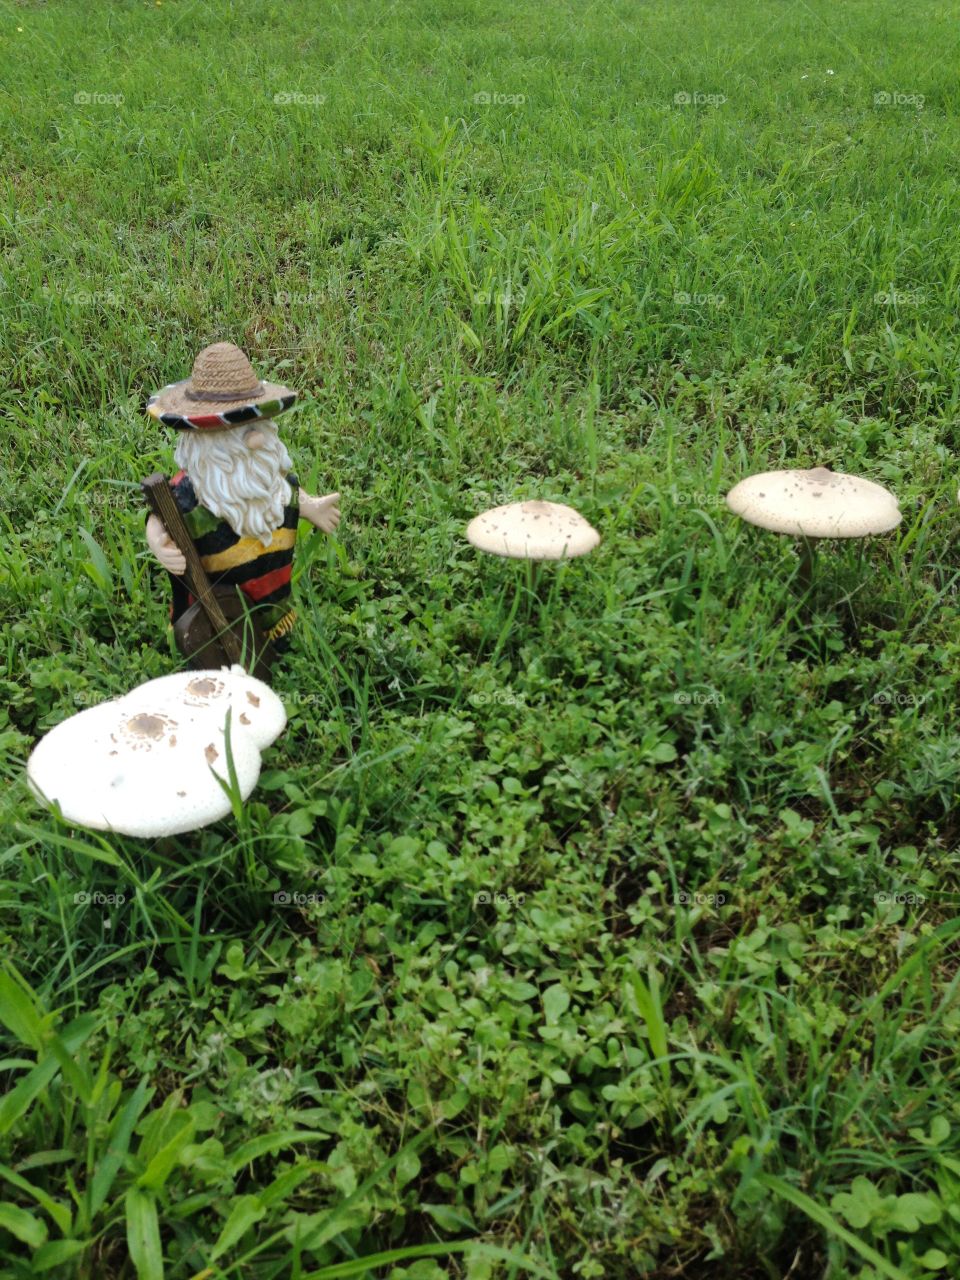 Mariachi Gnome's Mushroom Village . A ceramic mariachi gnome watches over his garden